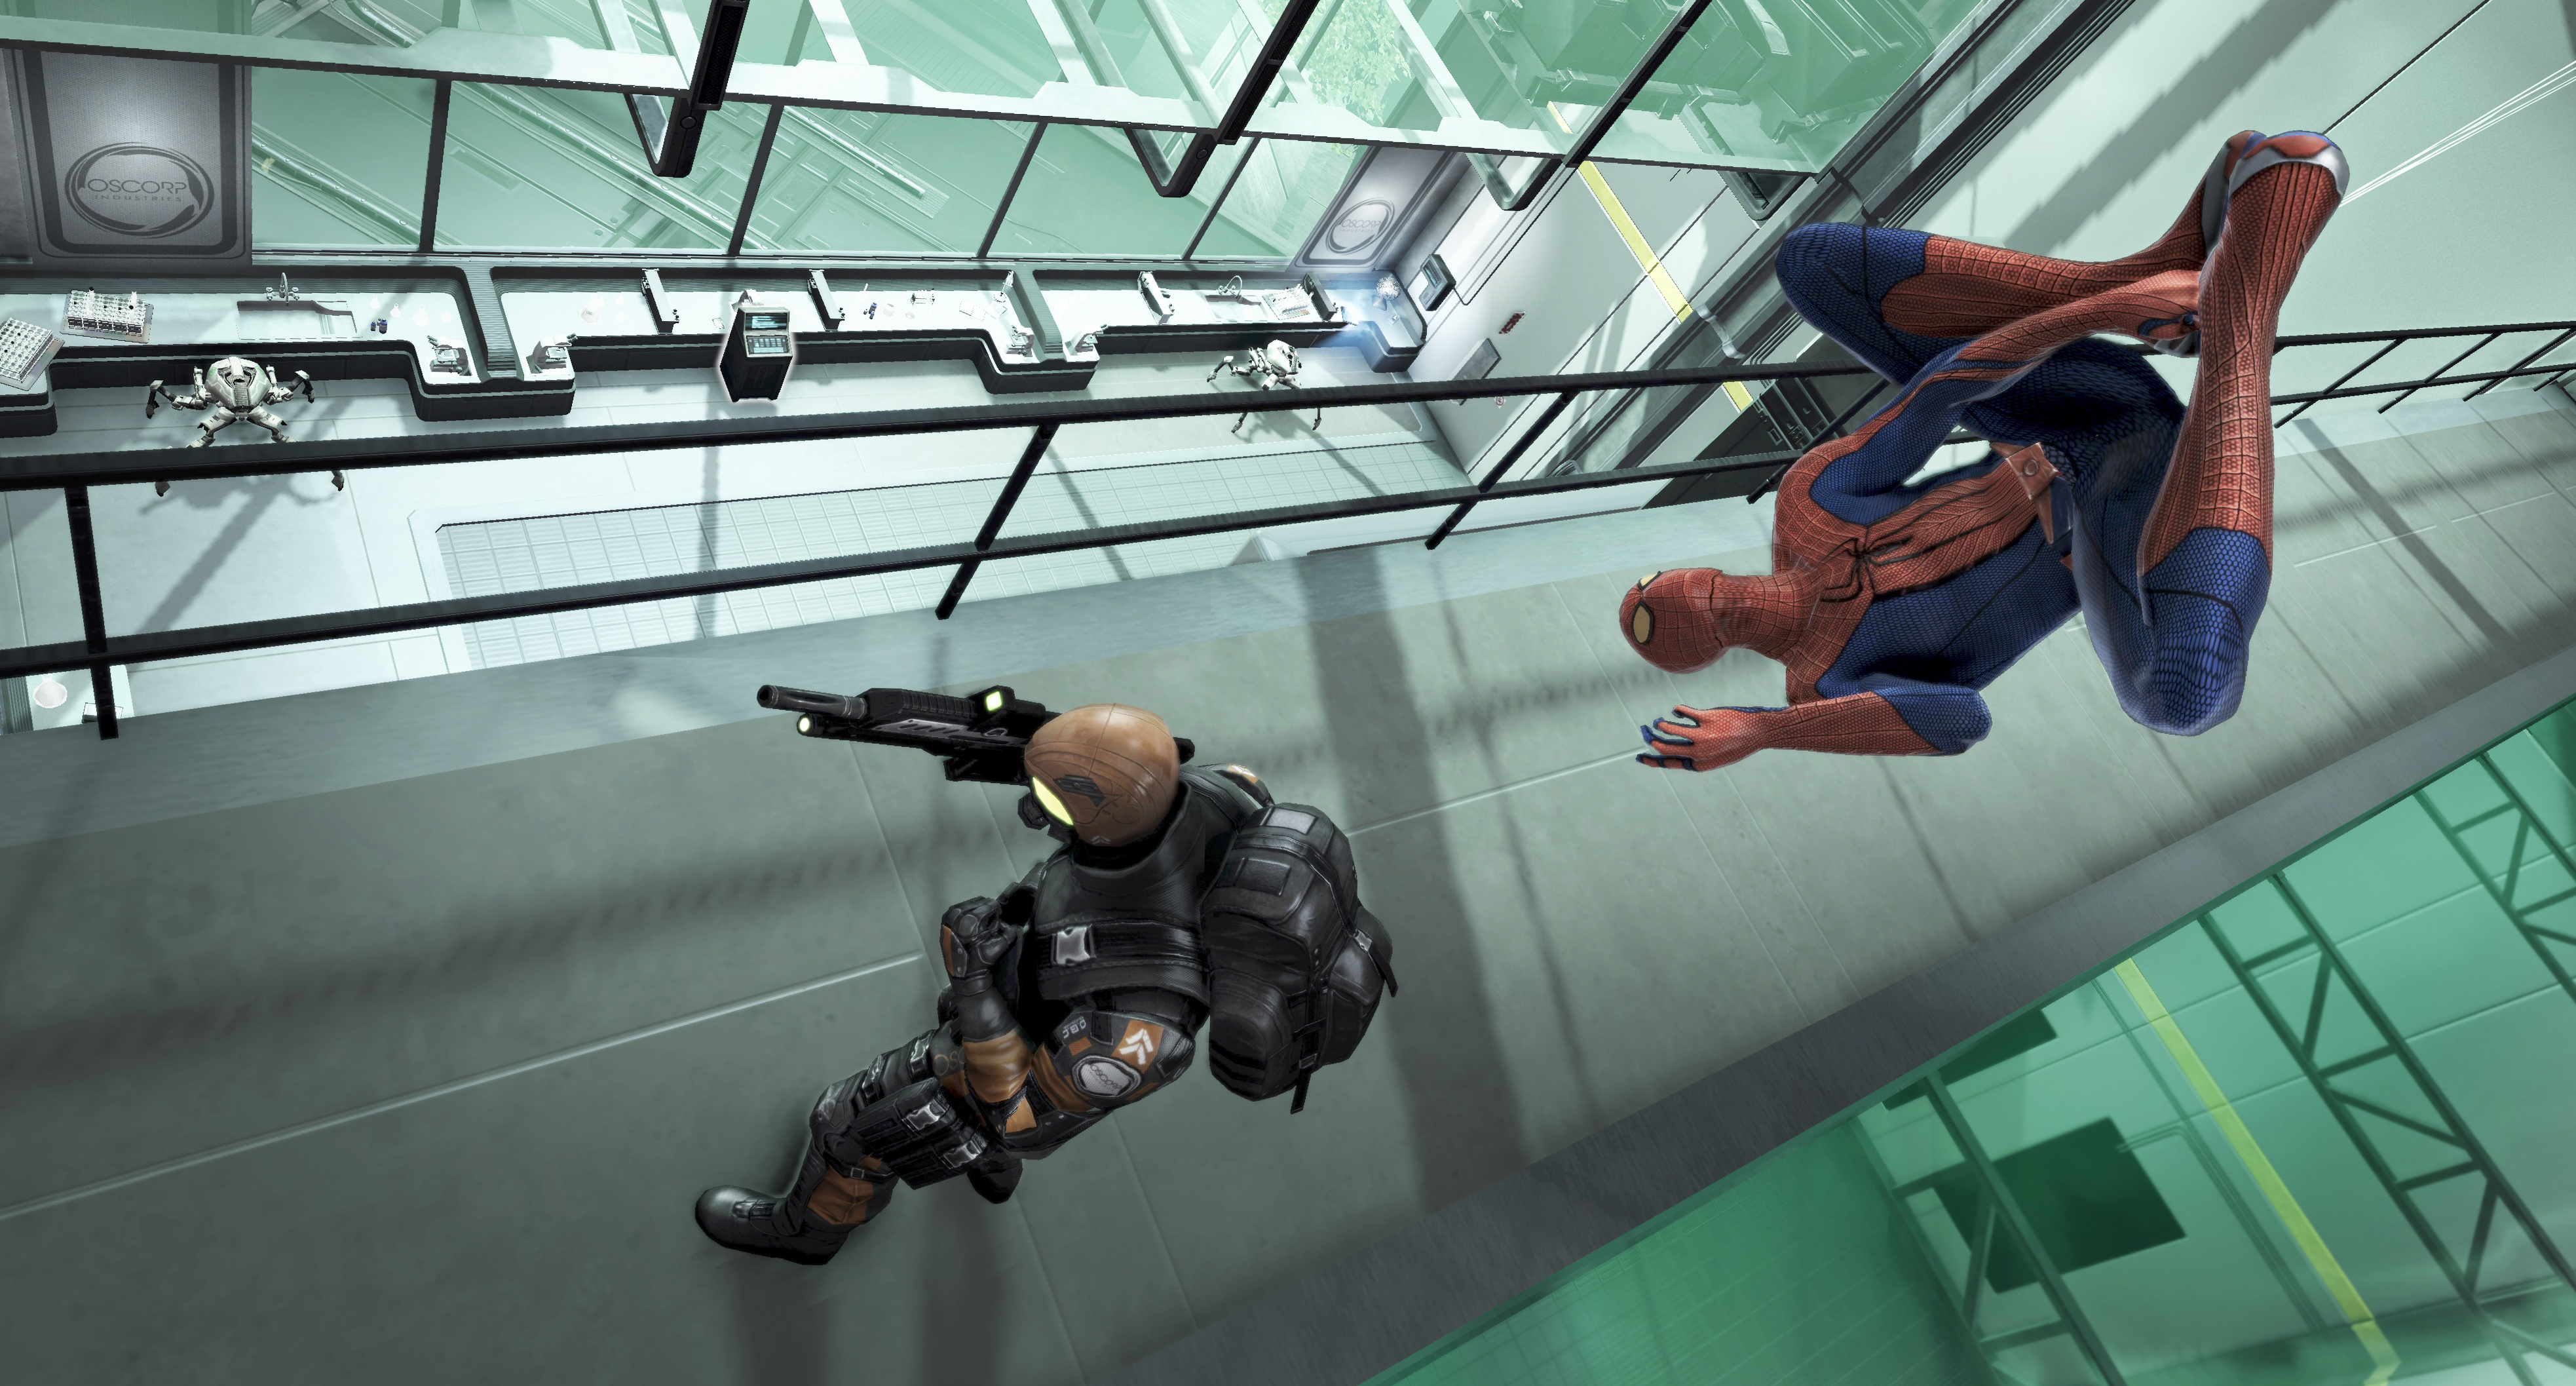 Игра человек камера. The amazing Spider-man игра. The amazing Spider-man 1 игра. Новый человек паук игра 2012. Человек паук игра 2012.